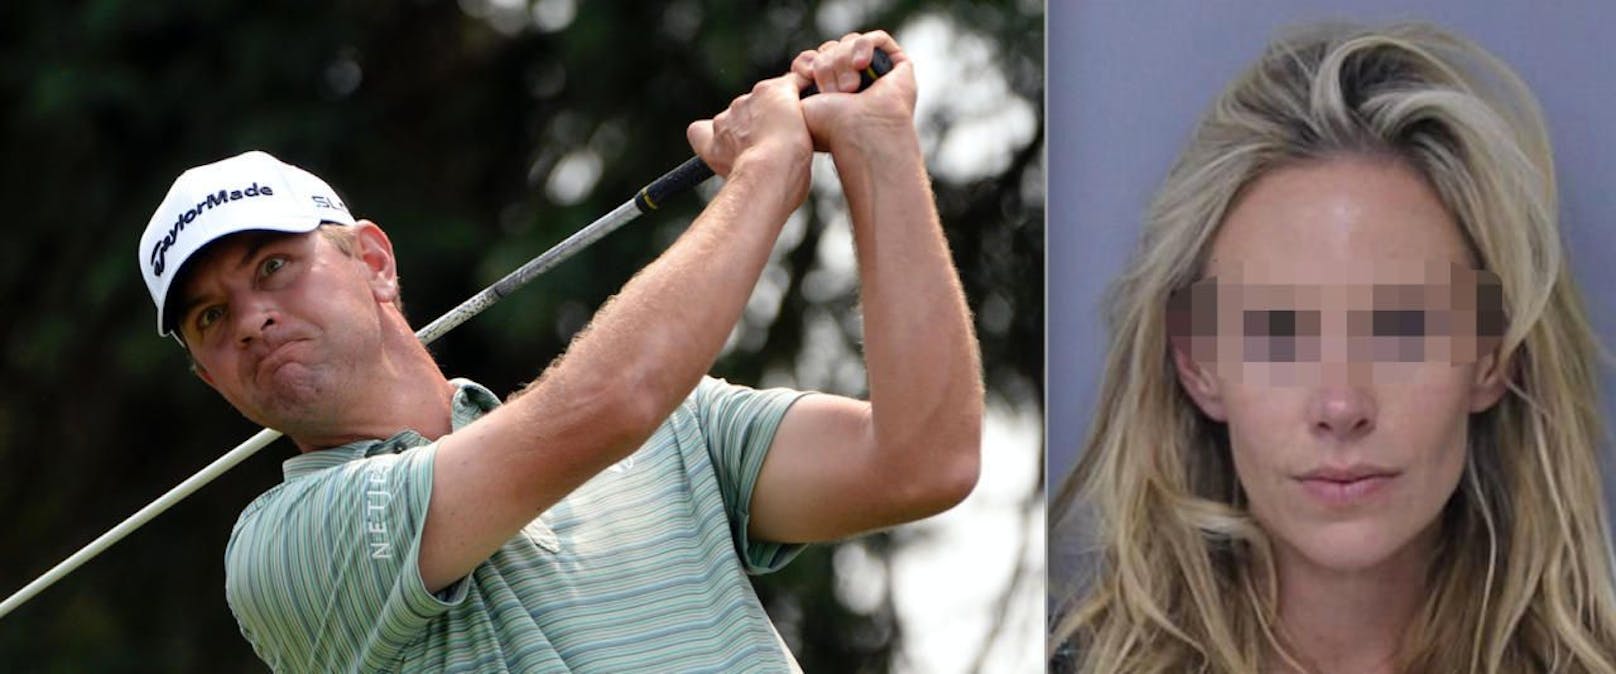 Hart, aber wahr: Sie schlug besser zu als er! US-Golfer Lucas Glover (38) spielte schlecht, seine Ehefrau Krista (36) verprügelte ihn. Haft! 